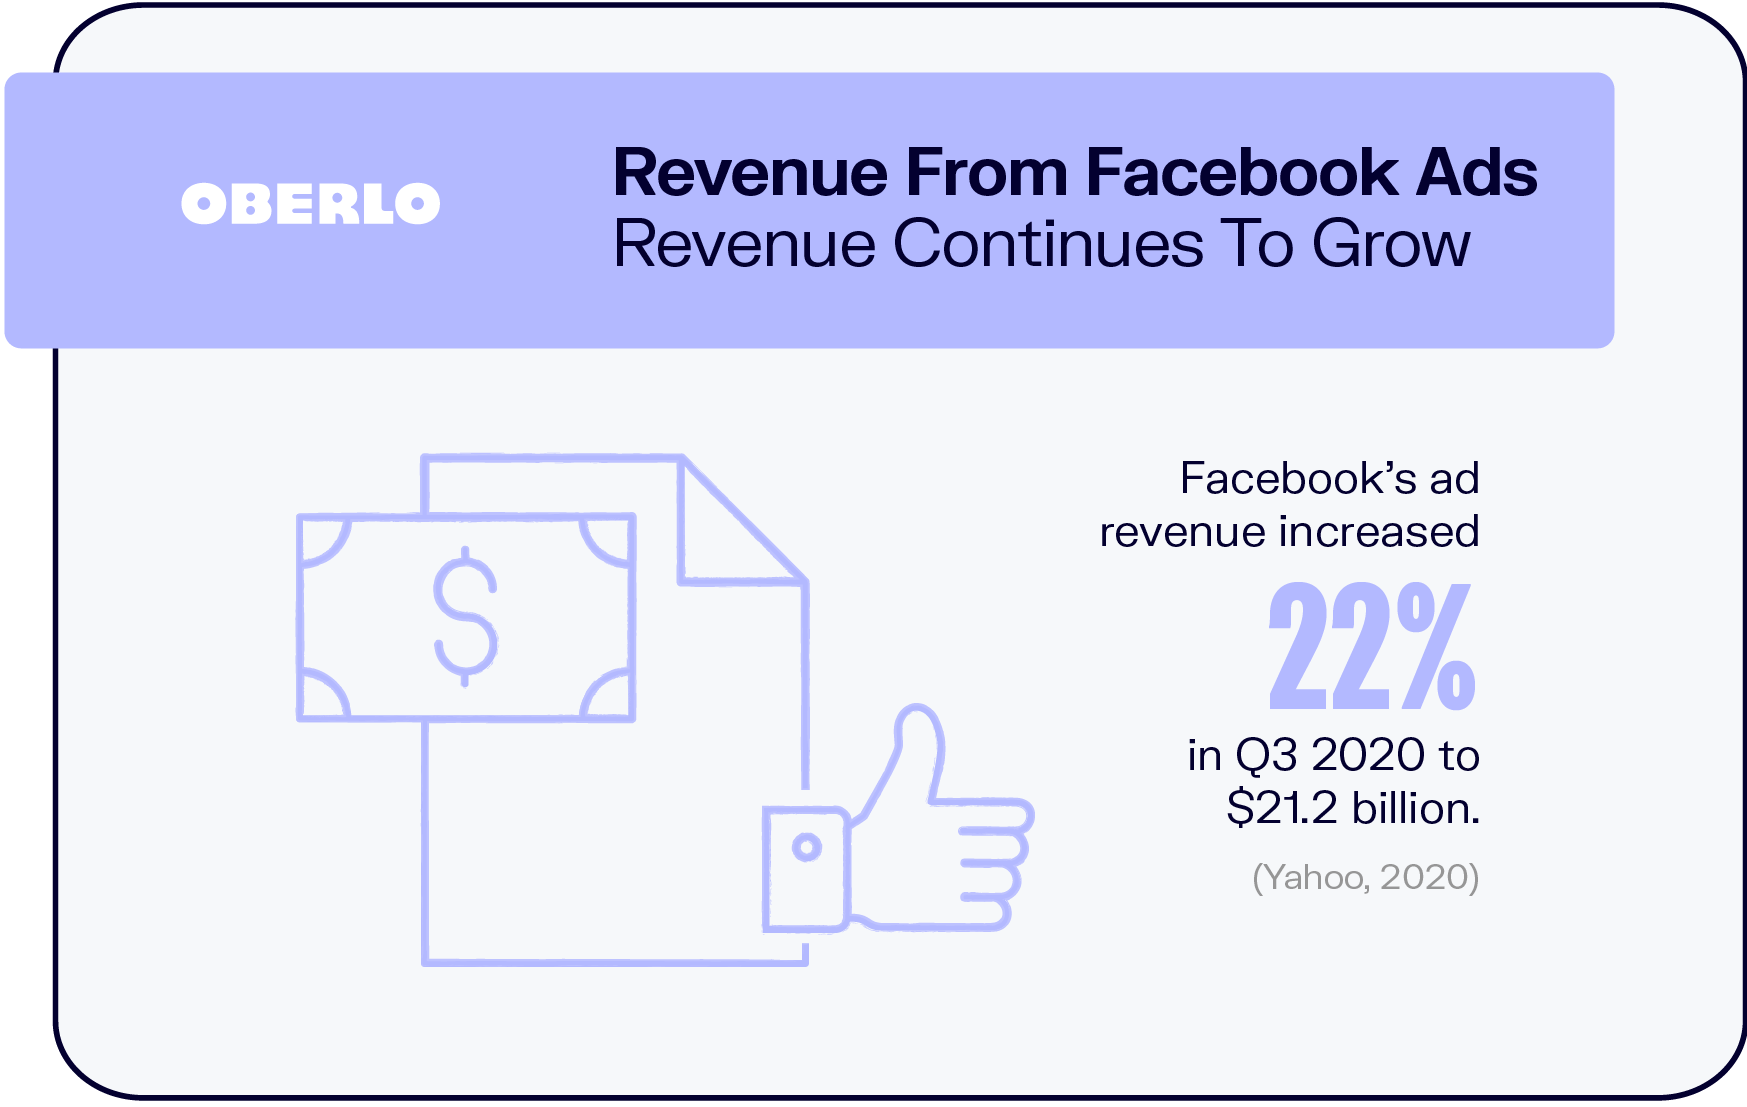 Los ingresos de los anuncios de Facebook continúan creciendo